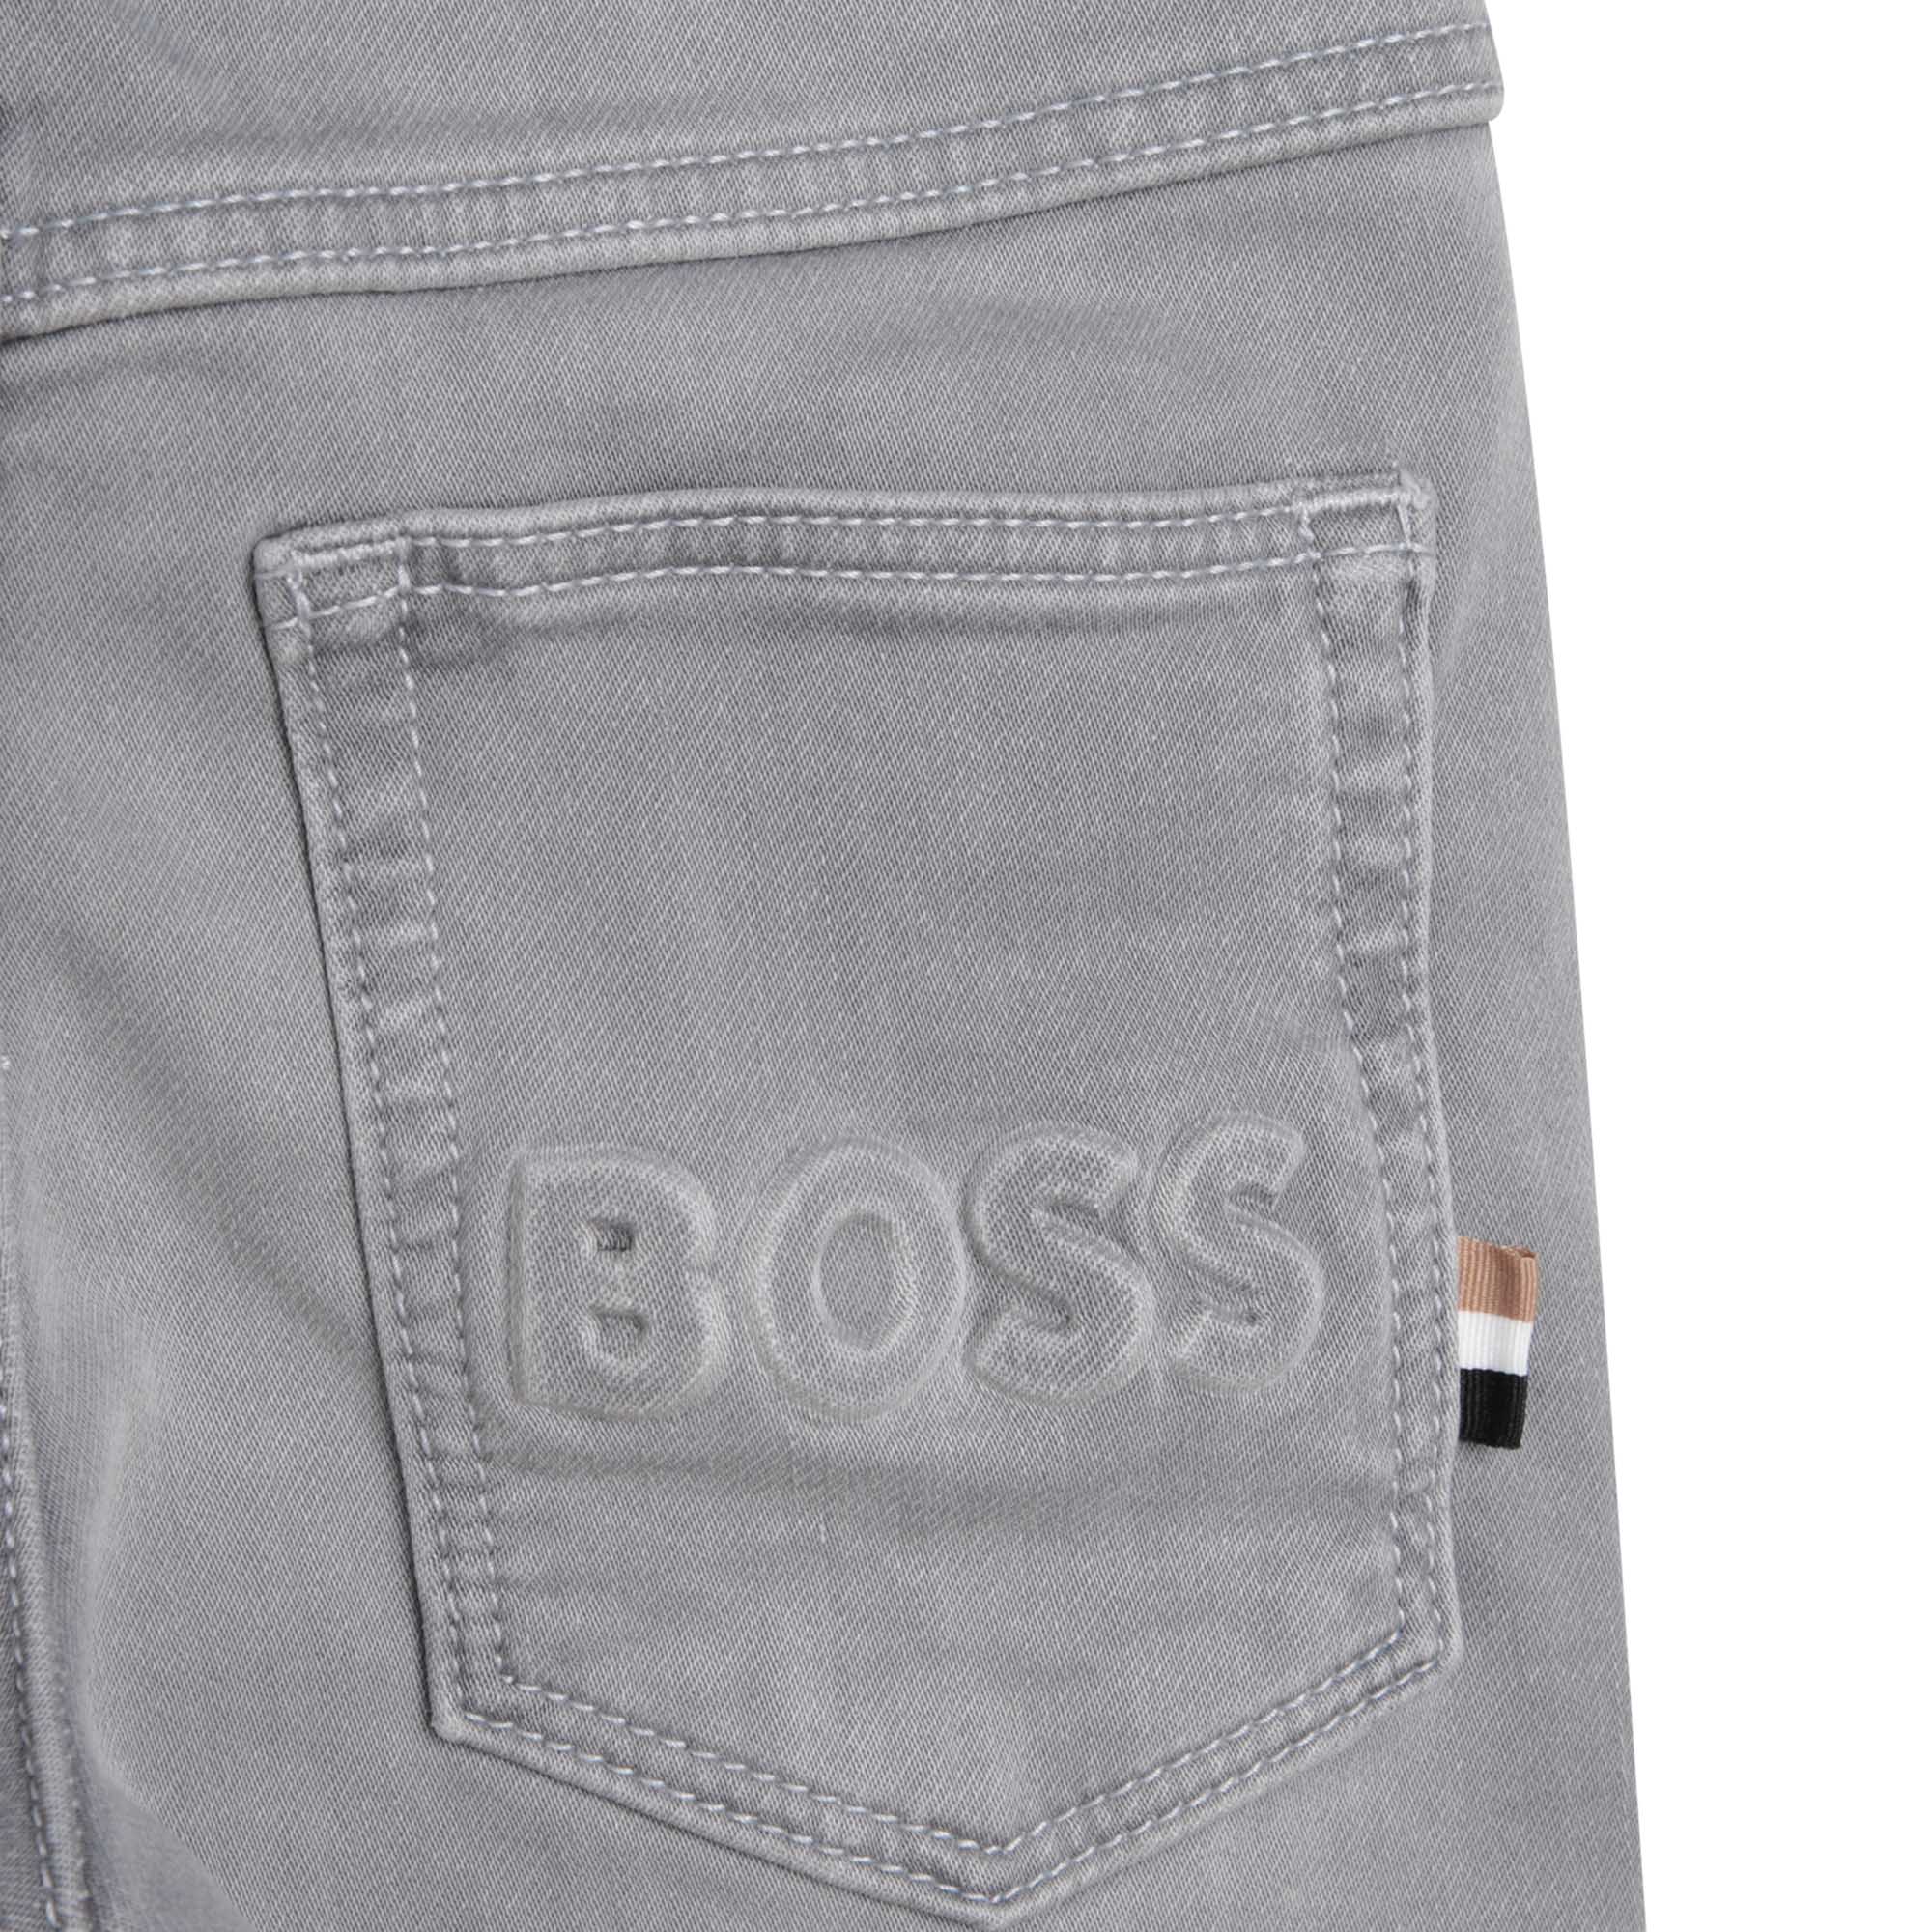 Denim 5-pocket trousers BOSS for BOY